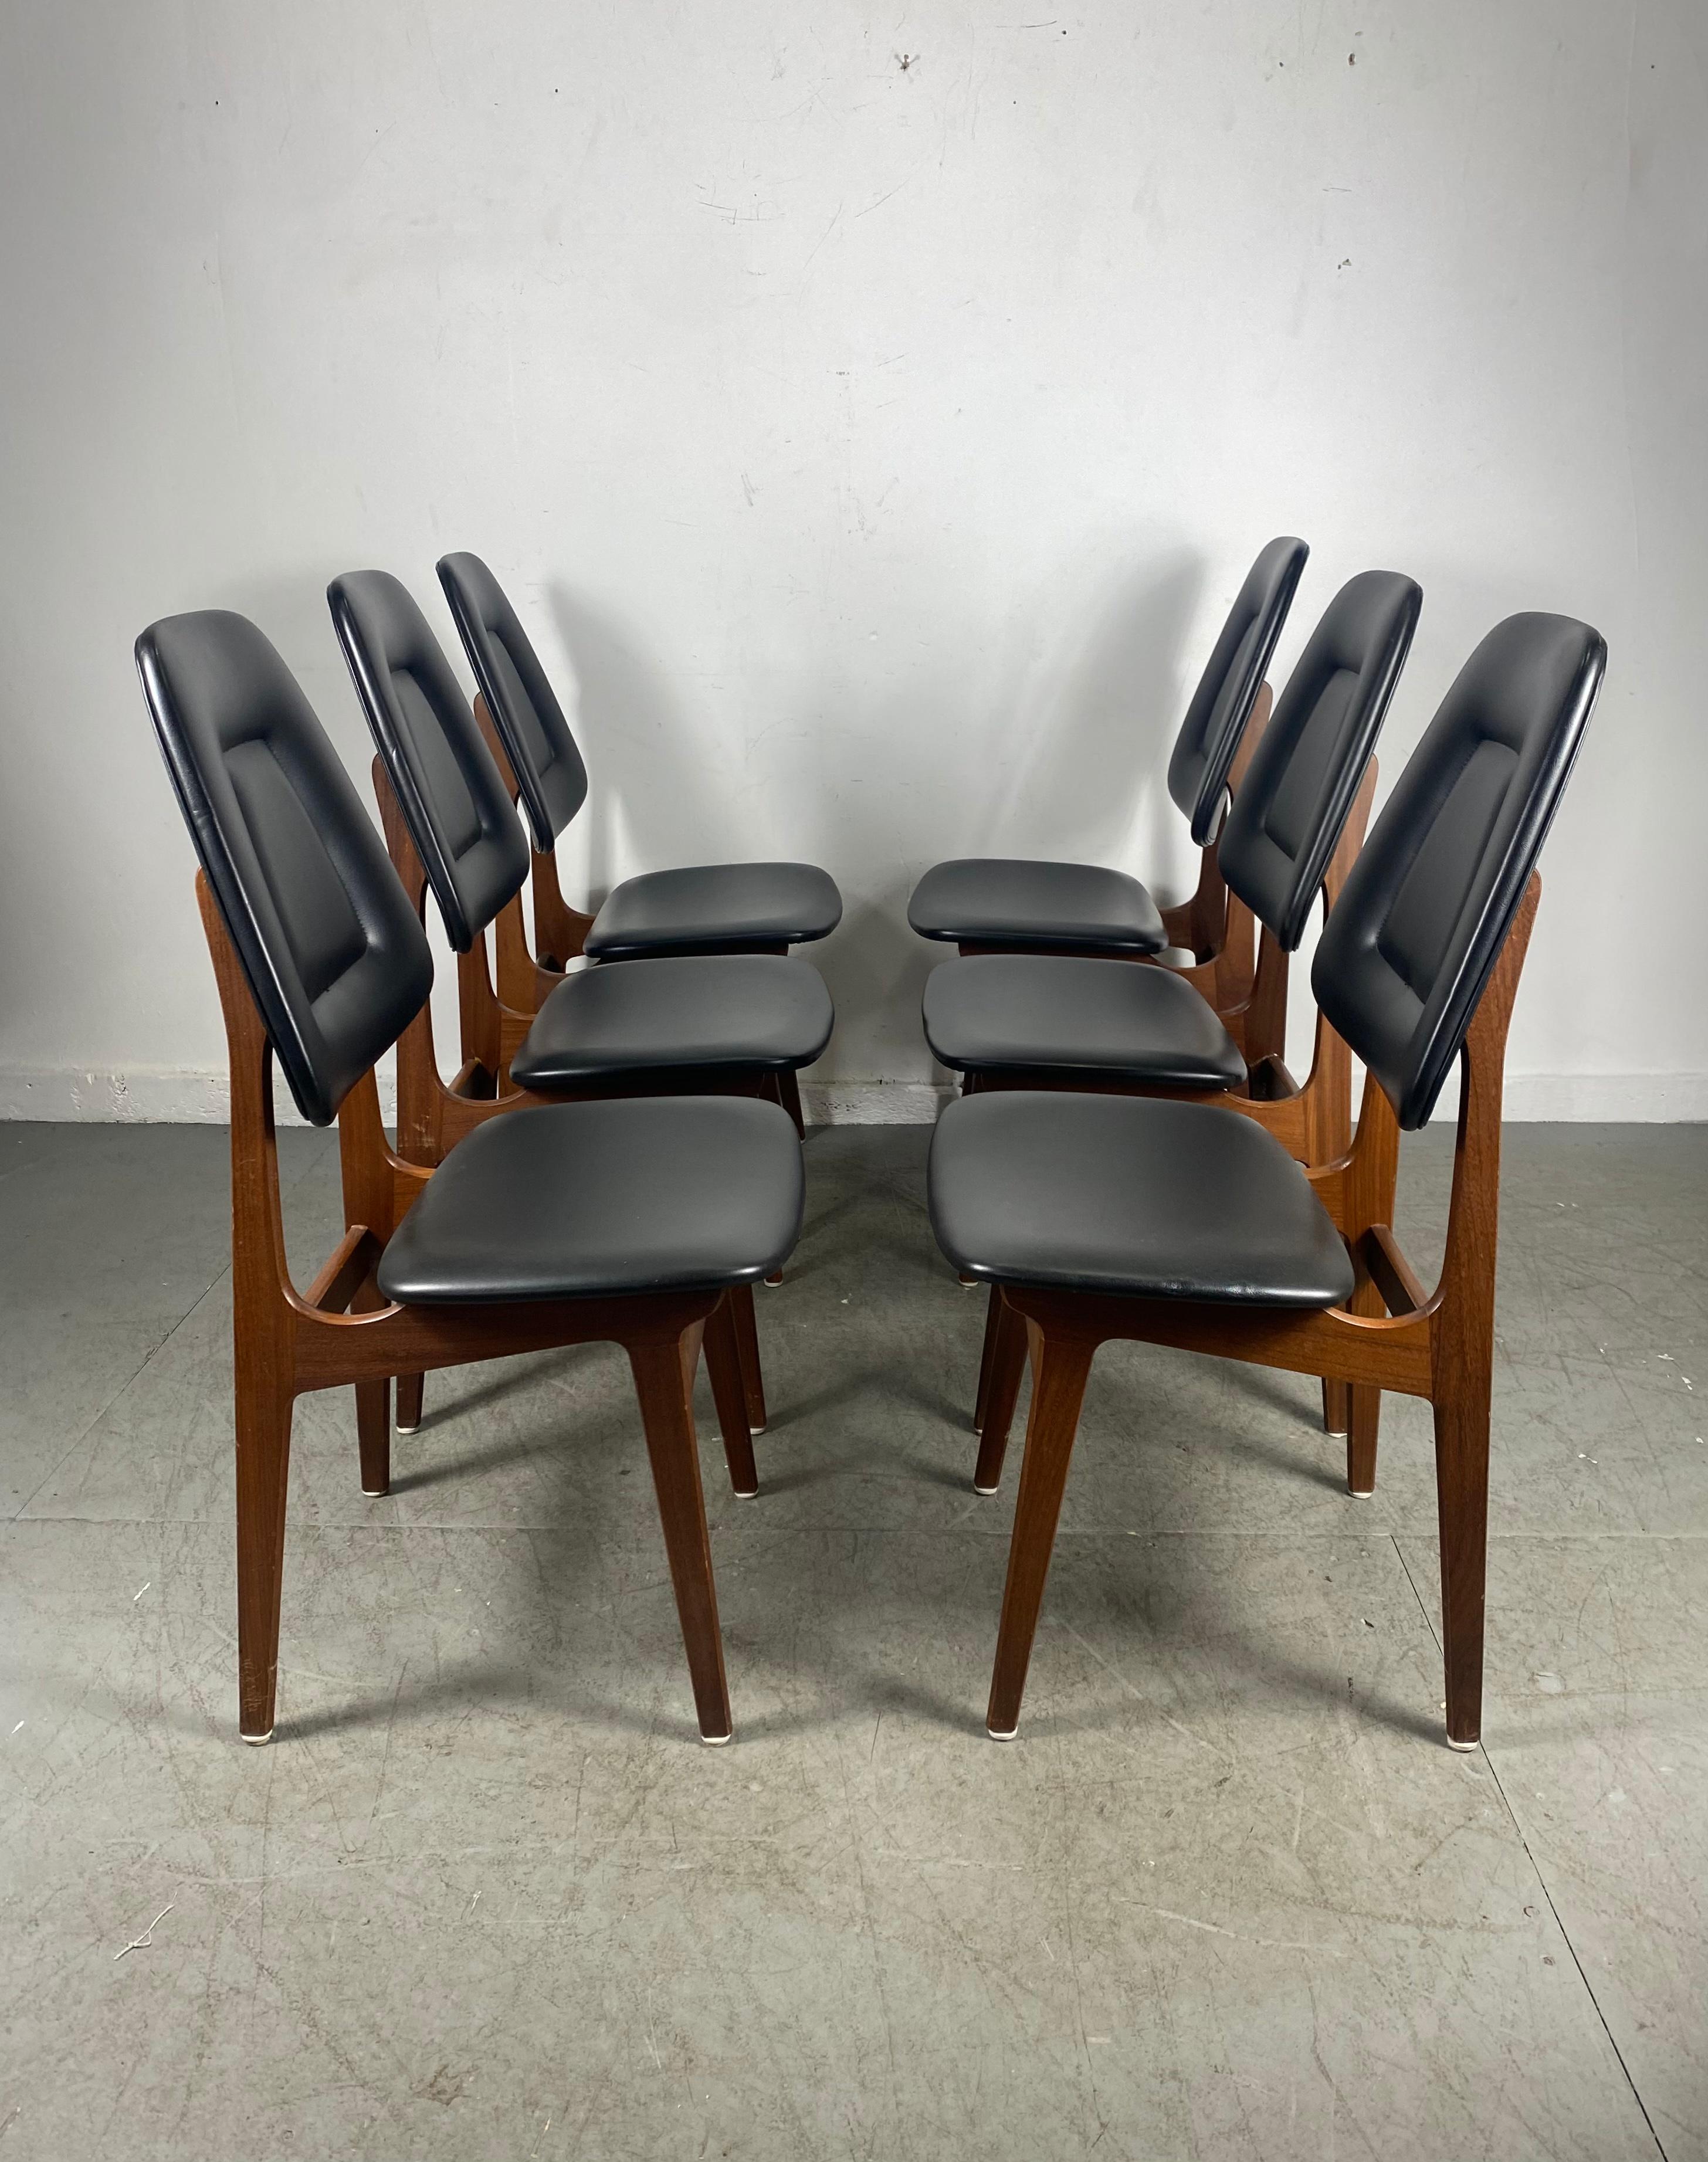 Satz von sechs Teakholz-Esszimmerstühlen mit original schwarzem Kunstlederbezug von Brødrene Sørheim. Die Stühle sind in sehr gutem Zustand mit altersgemäßen Gebrauchsspuren. Strukturell solide,, feste Gelenke,, kein Wackeln,, Extrem komfortabel...